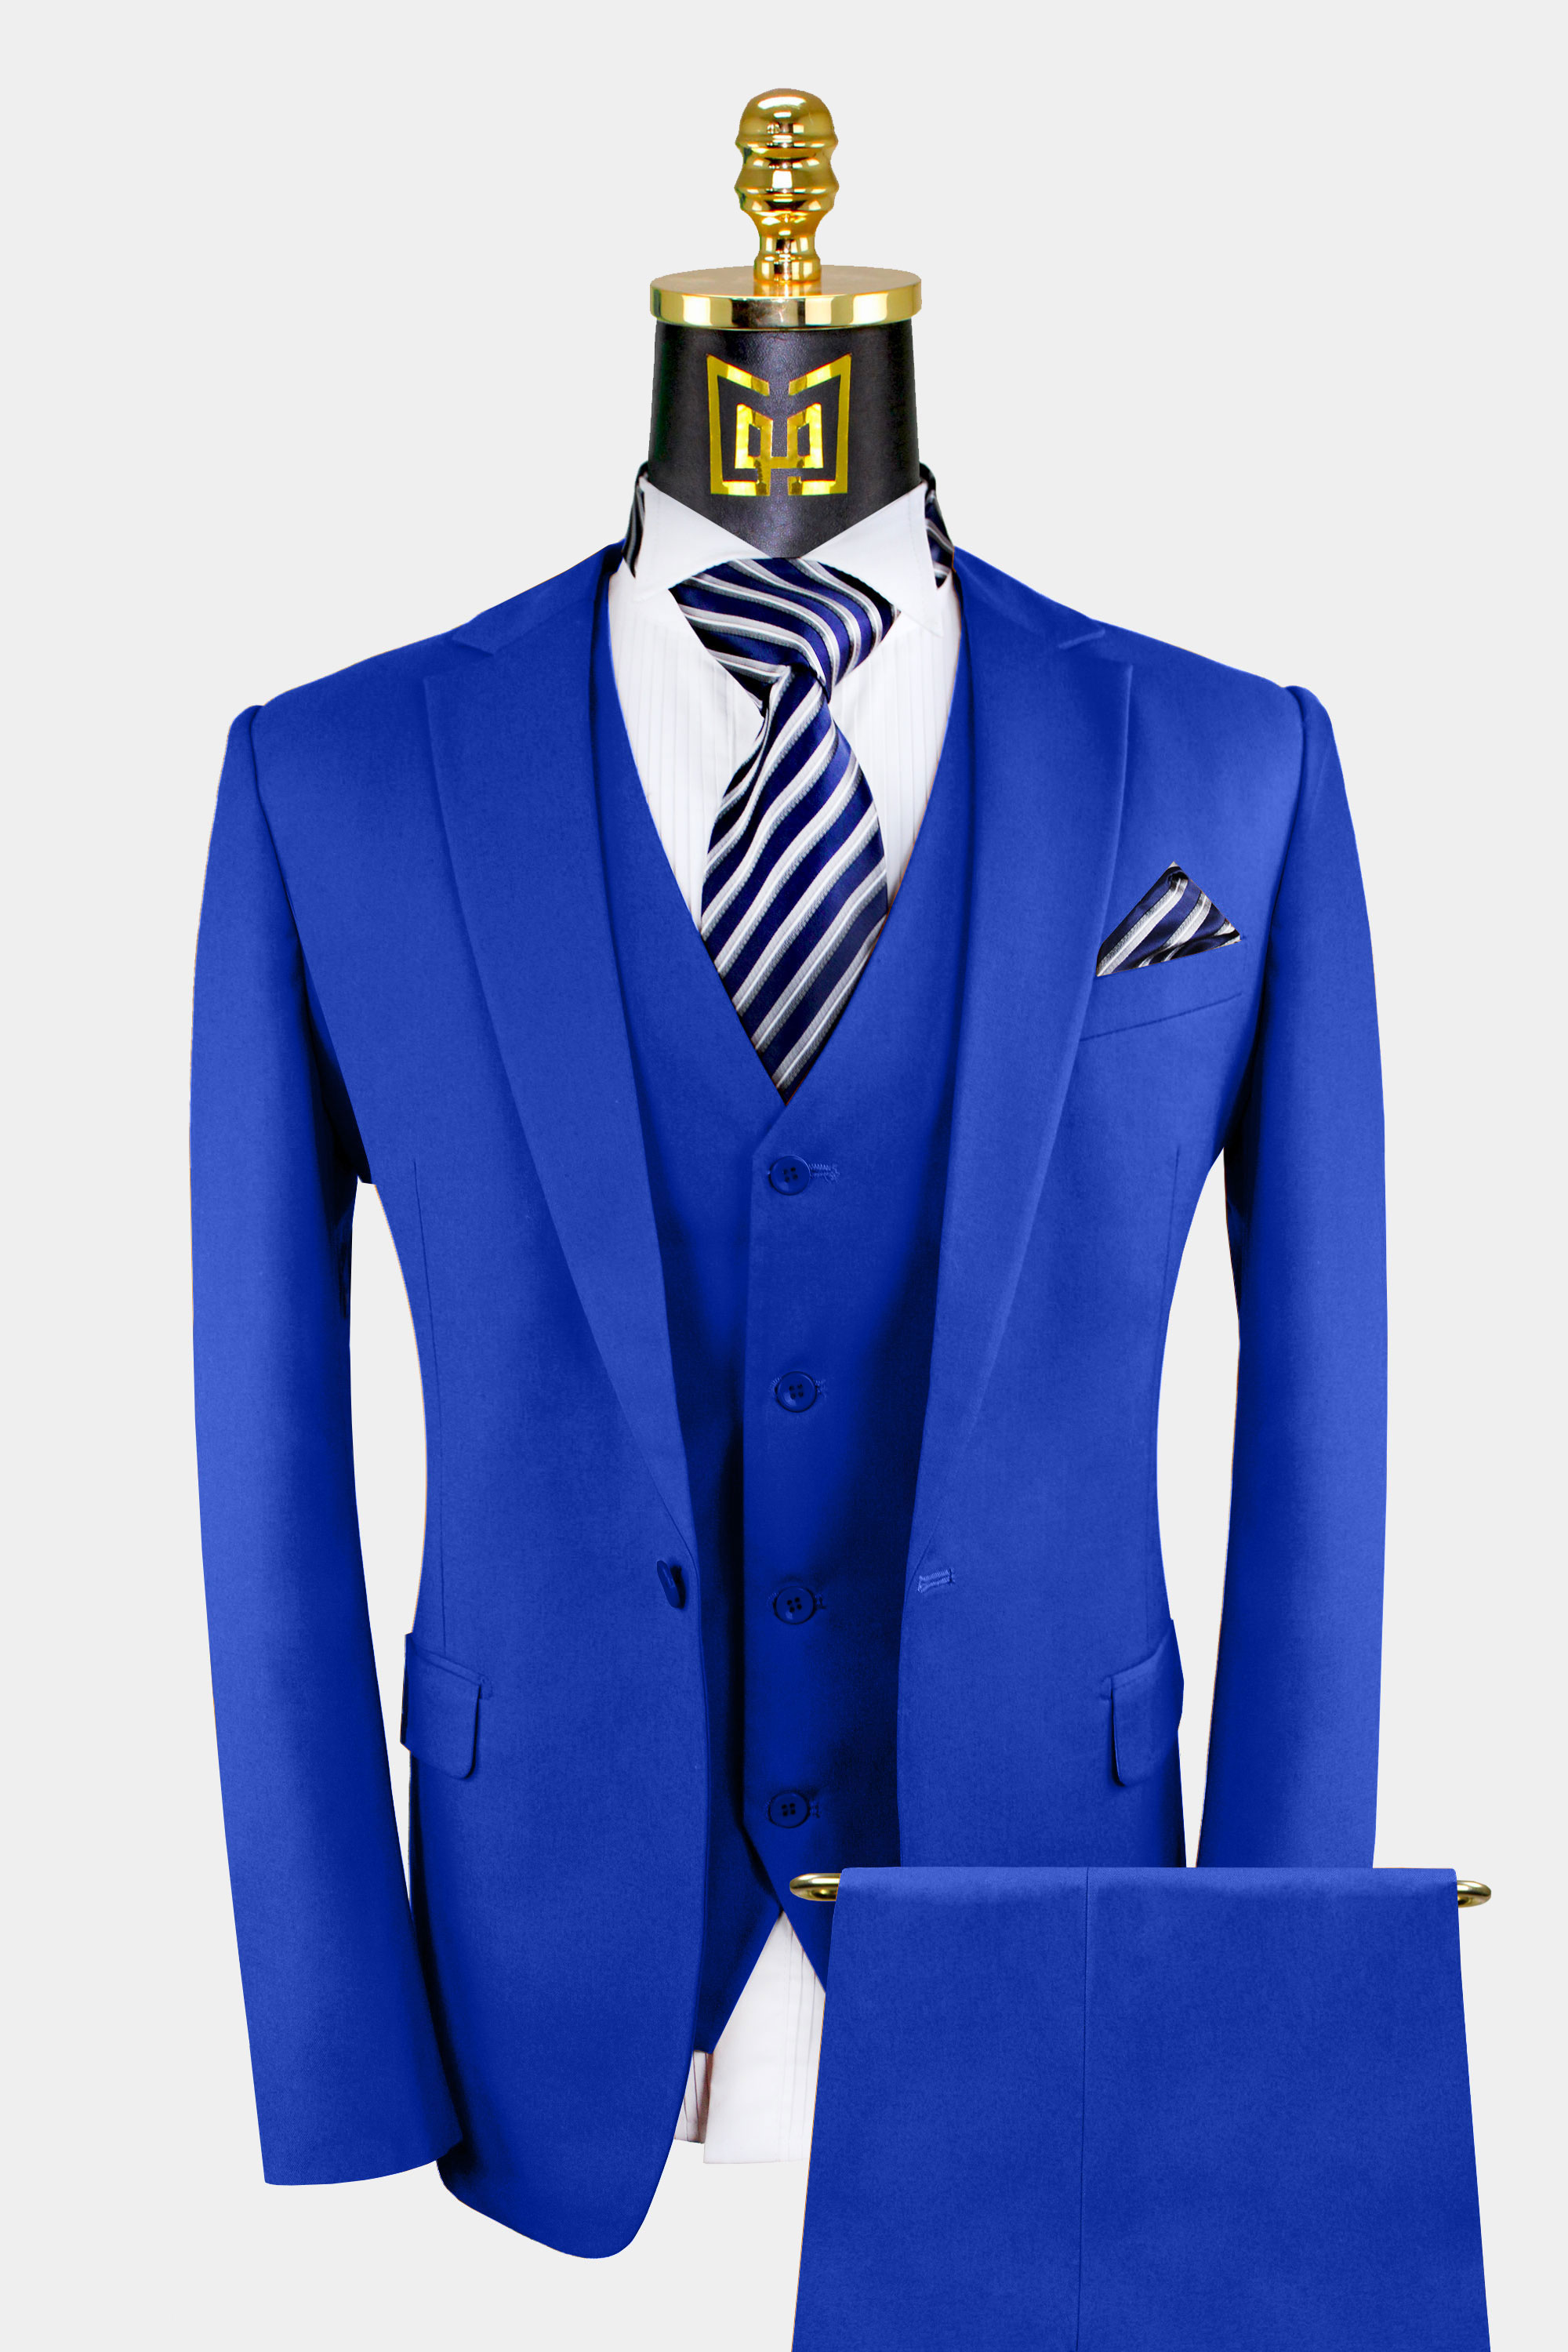 Shoes For Royal Blue Suit Wholesale Store, Save 56% | jlcatj.gob.mx